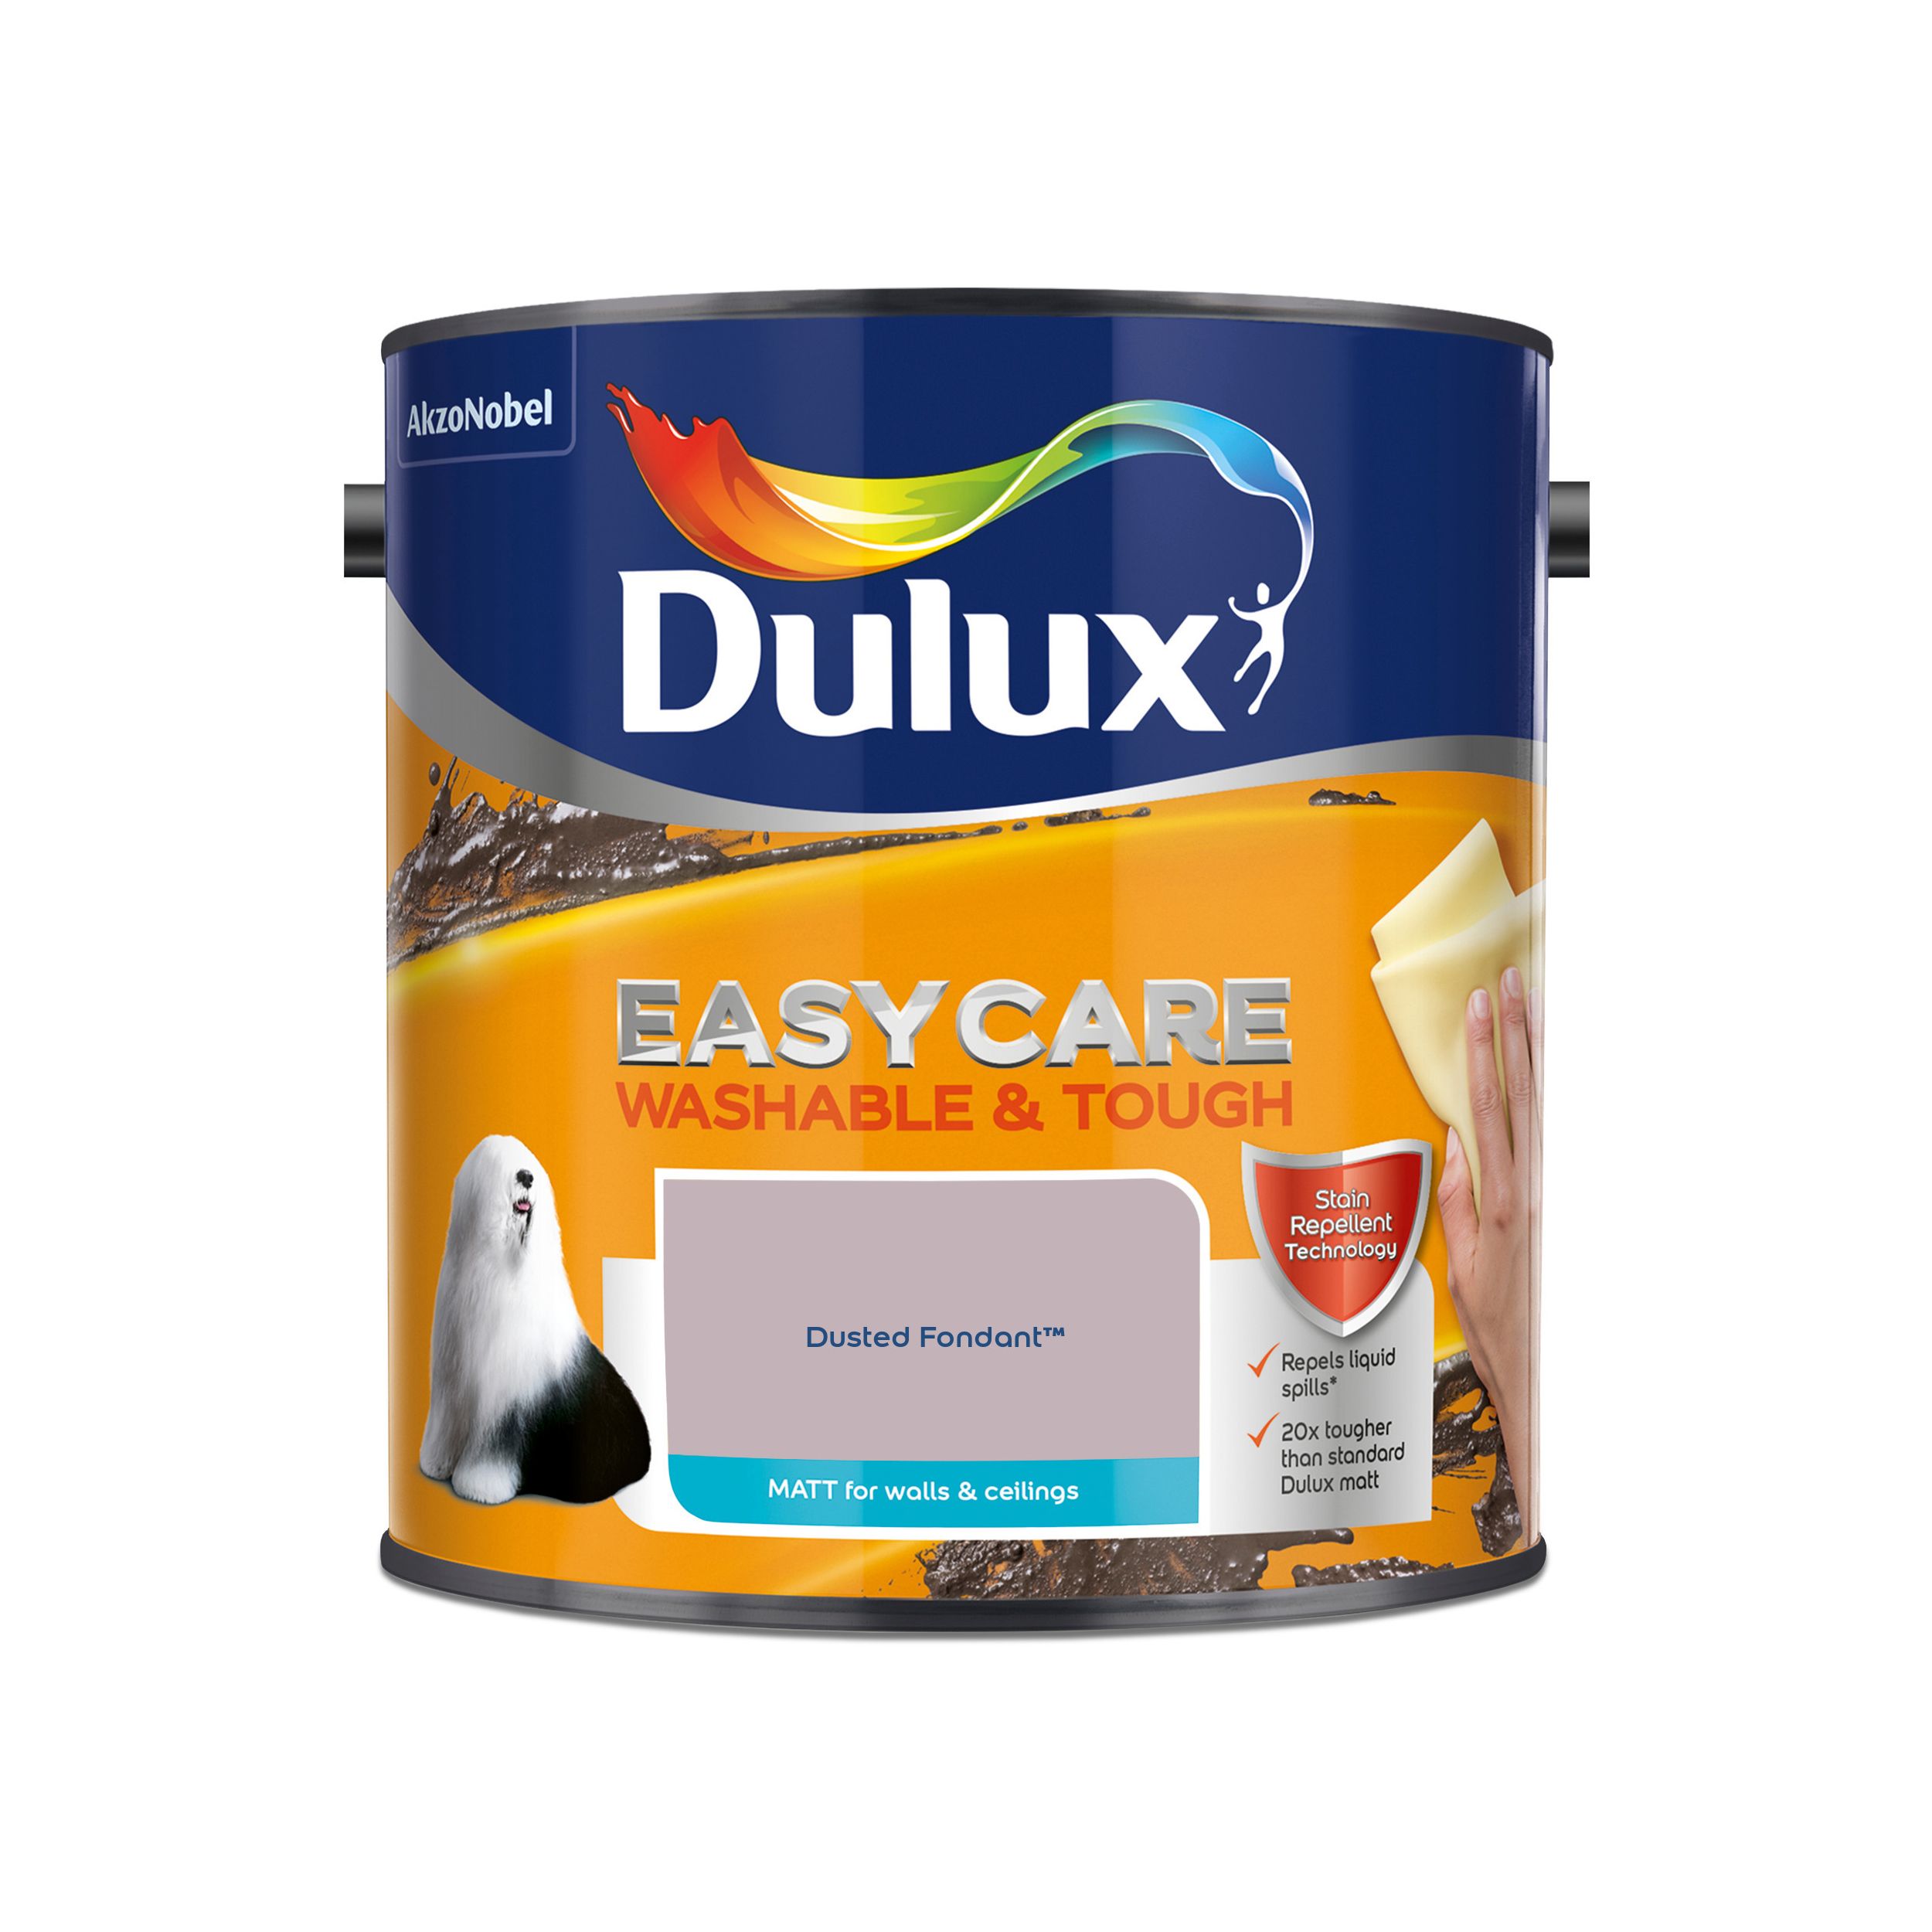 Dulux Easycare Dusted fondant Matt Emulsion paint, 2.5L